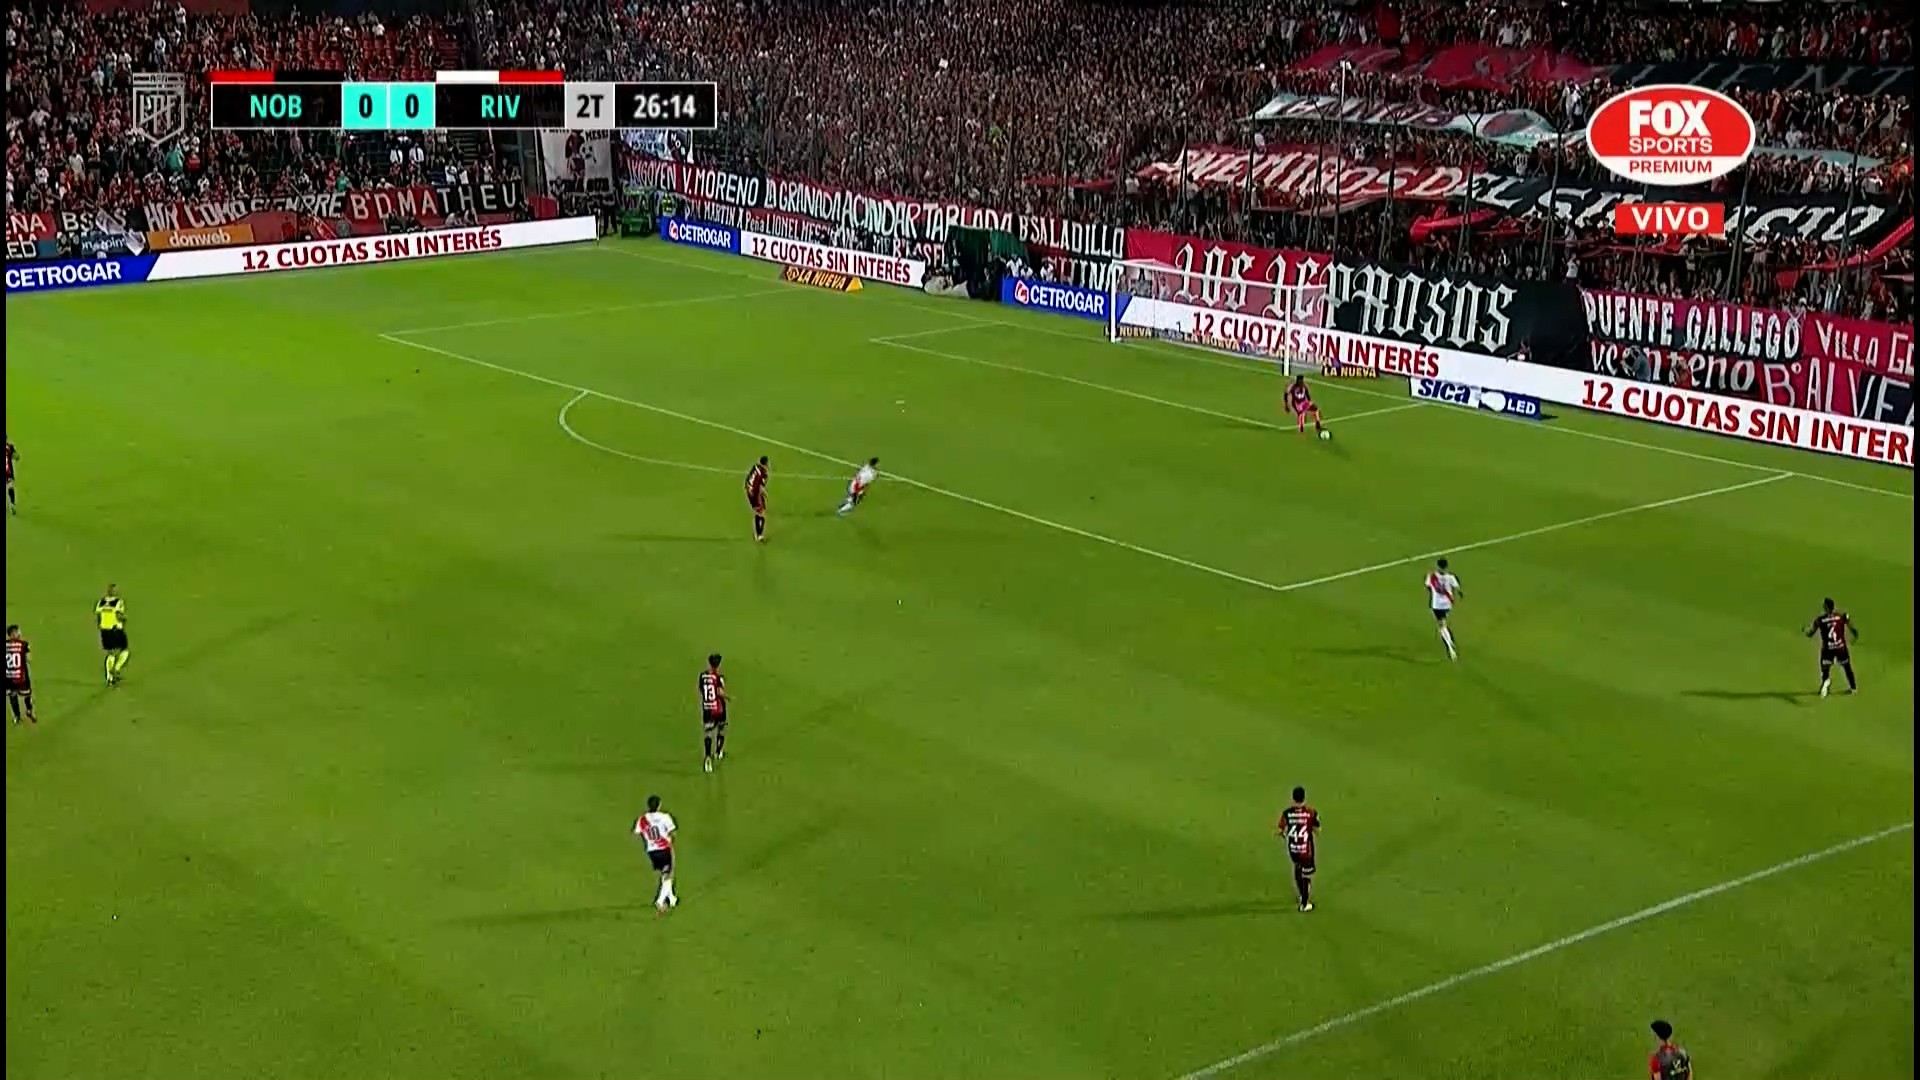 O River Plate na pressão da saída de bola do adversário; na sequência da jogada, o goleiro erra o passe e Quintero finaliza com o gol aberto, inaugurando o placar. 